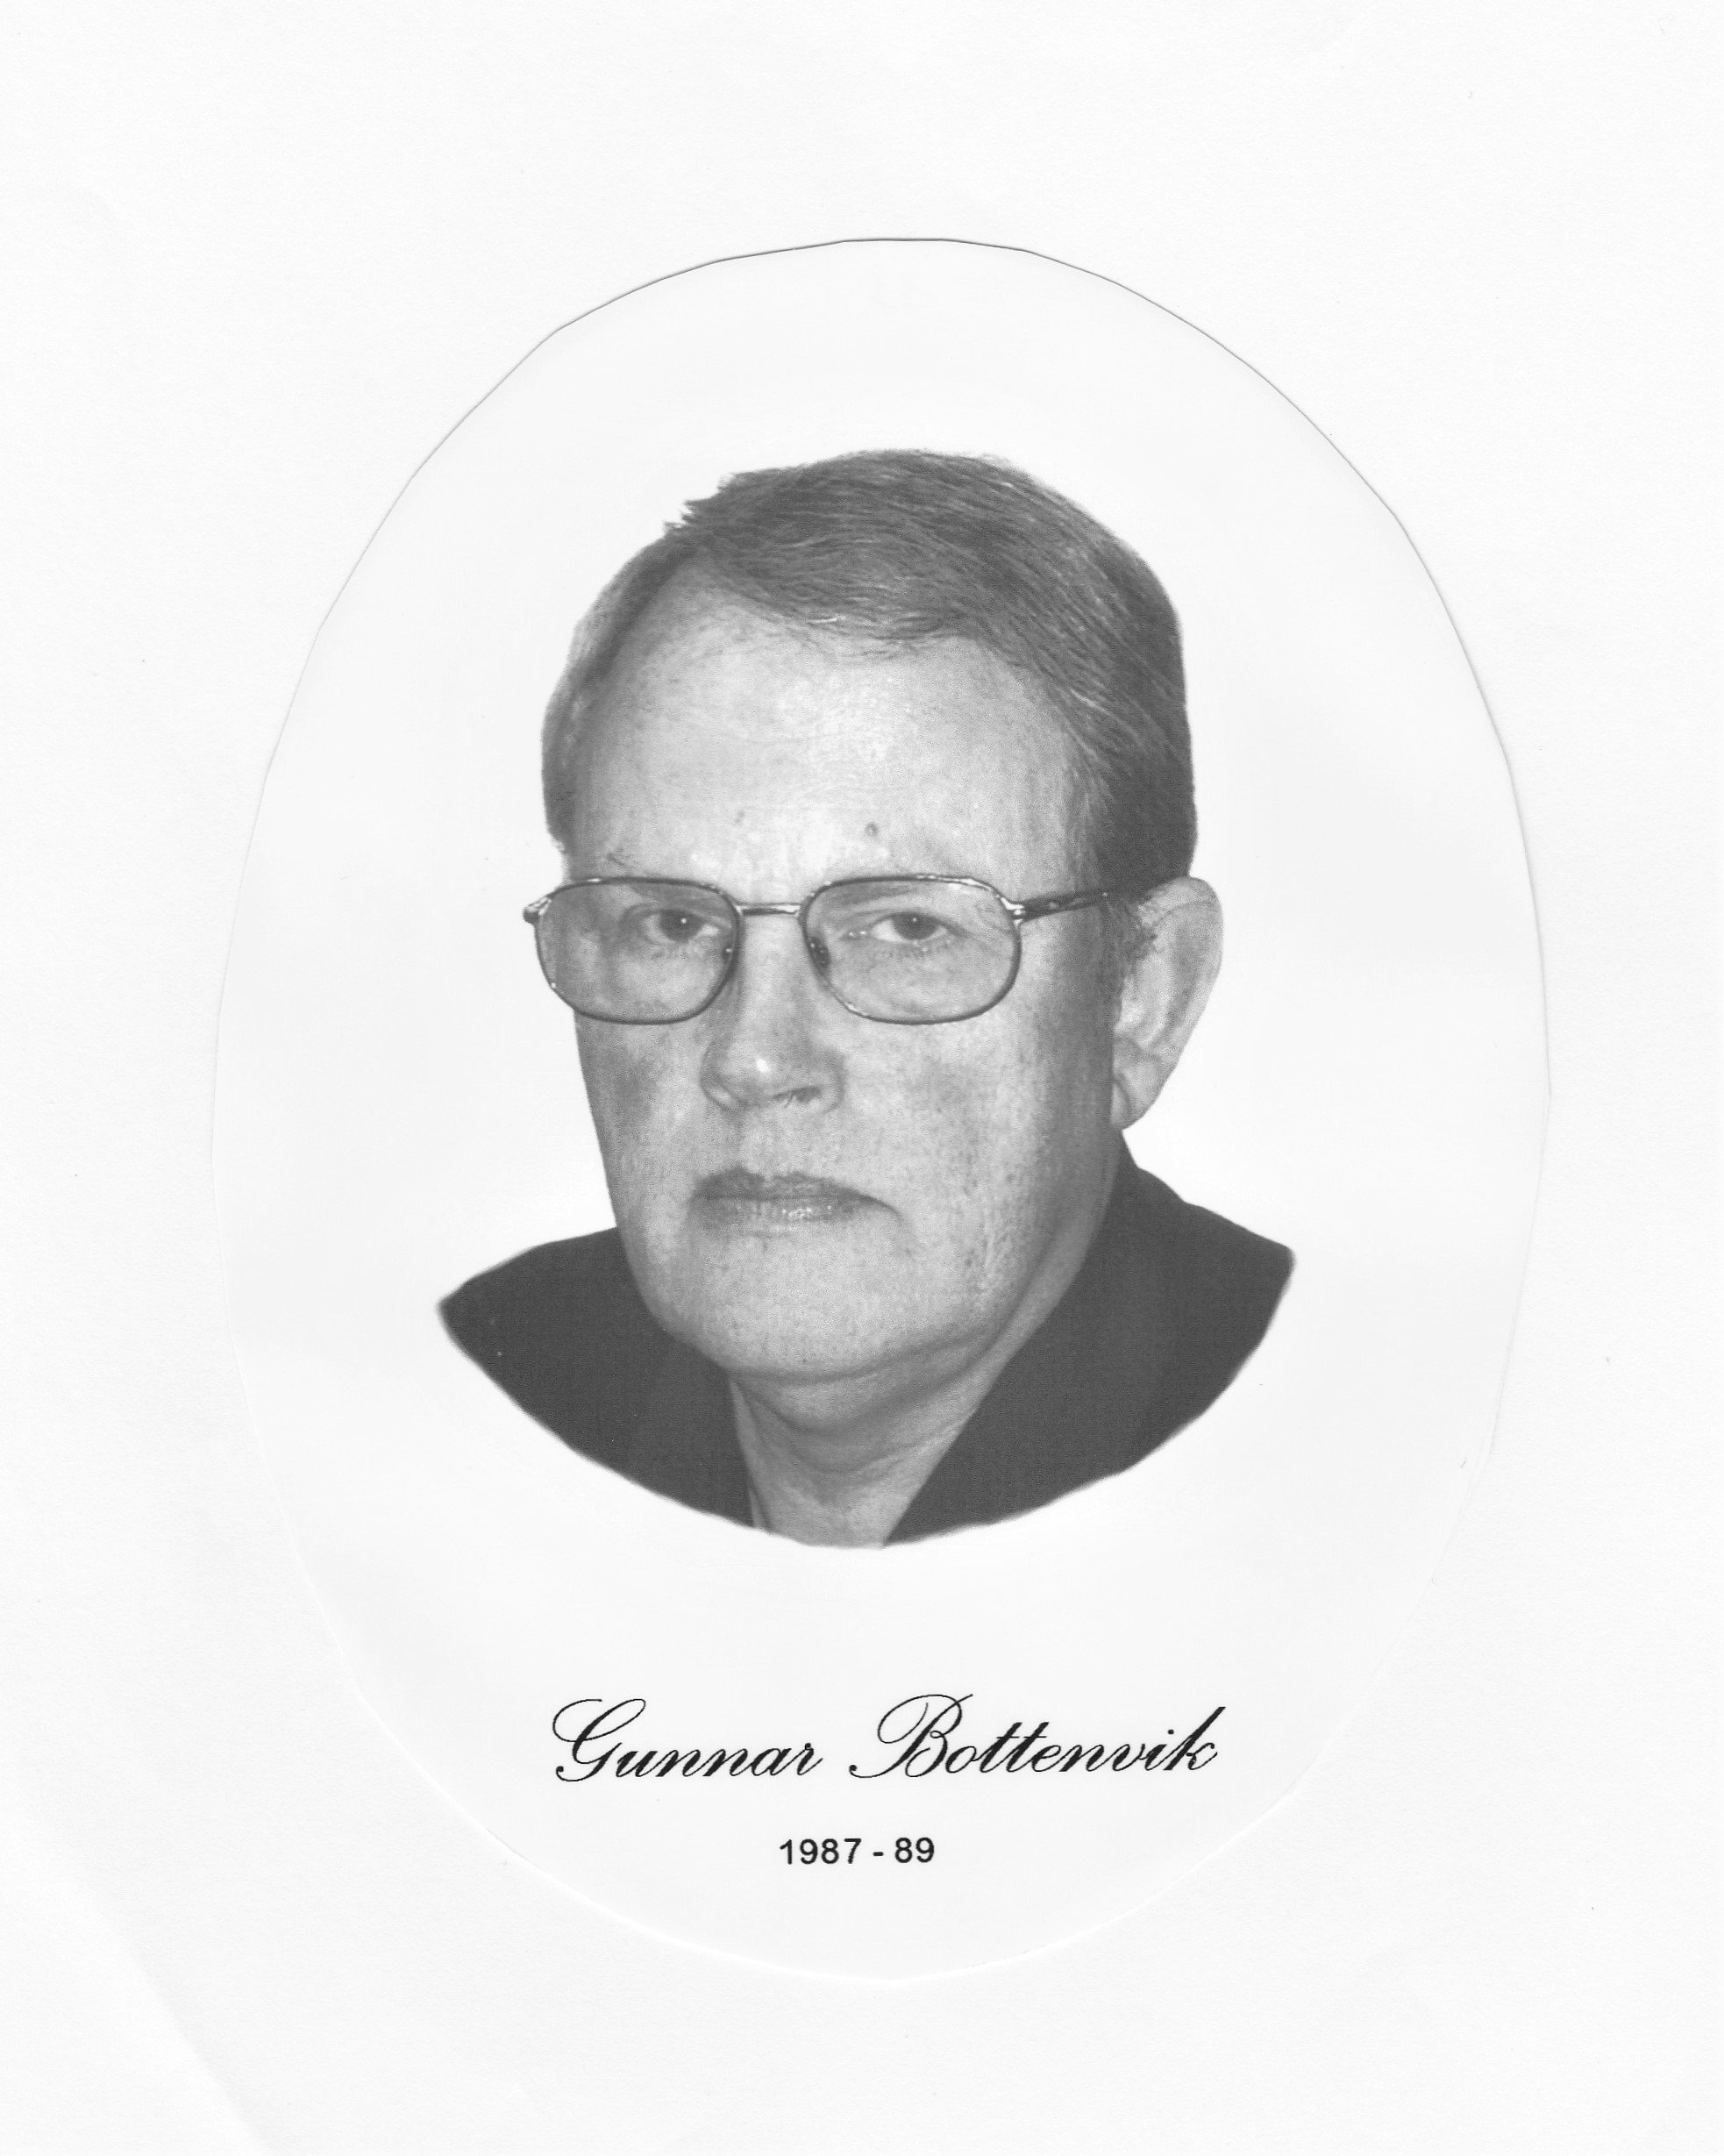 2 Gunnar Bottenvik 1987-89.jpg